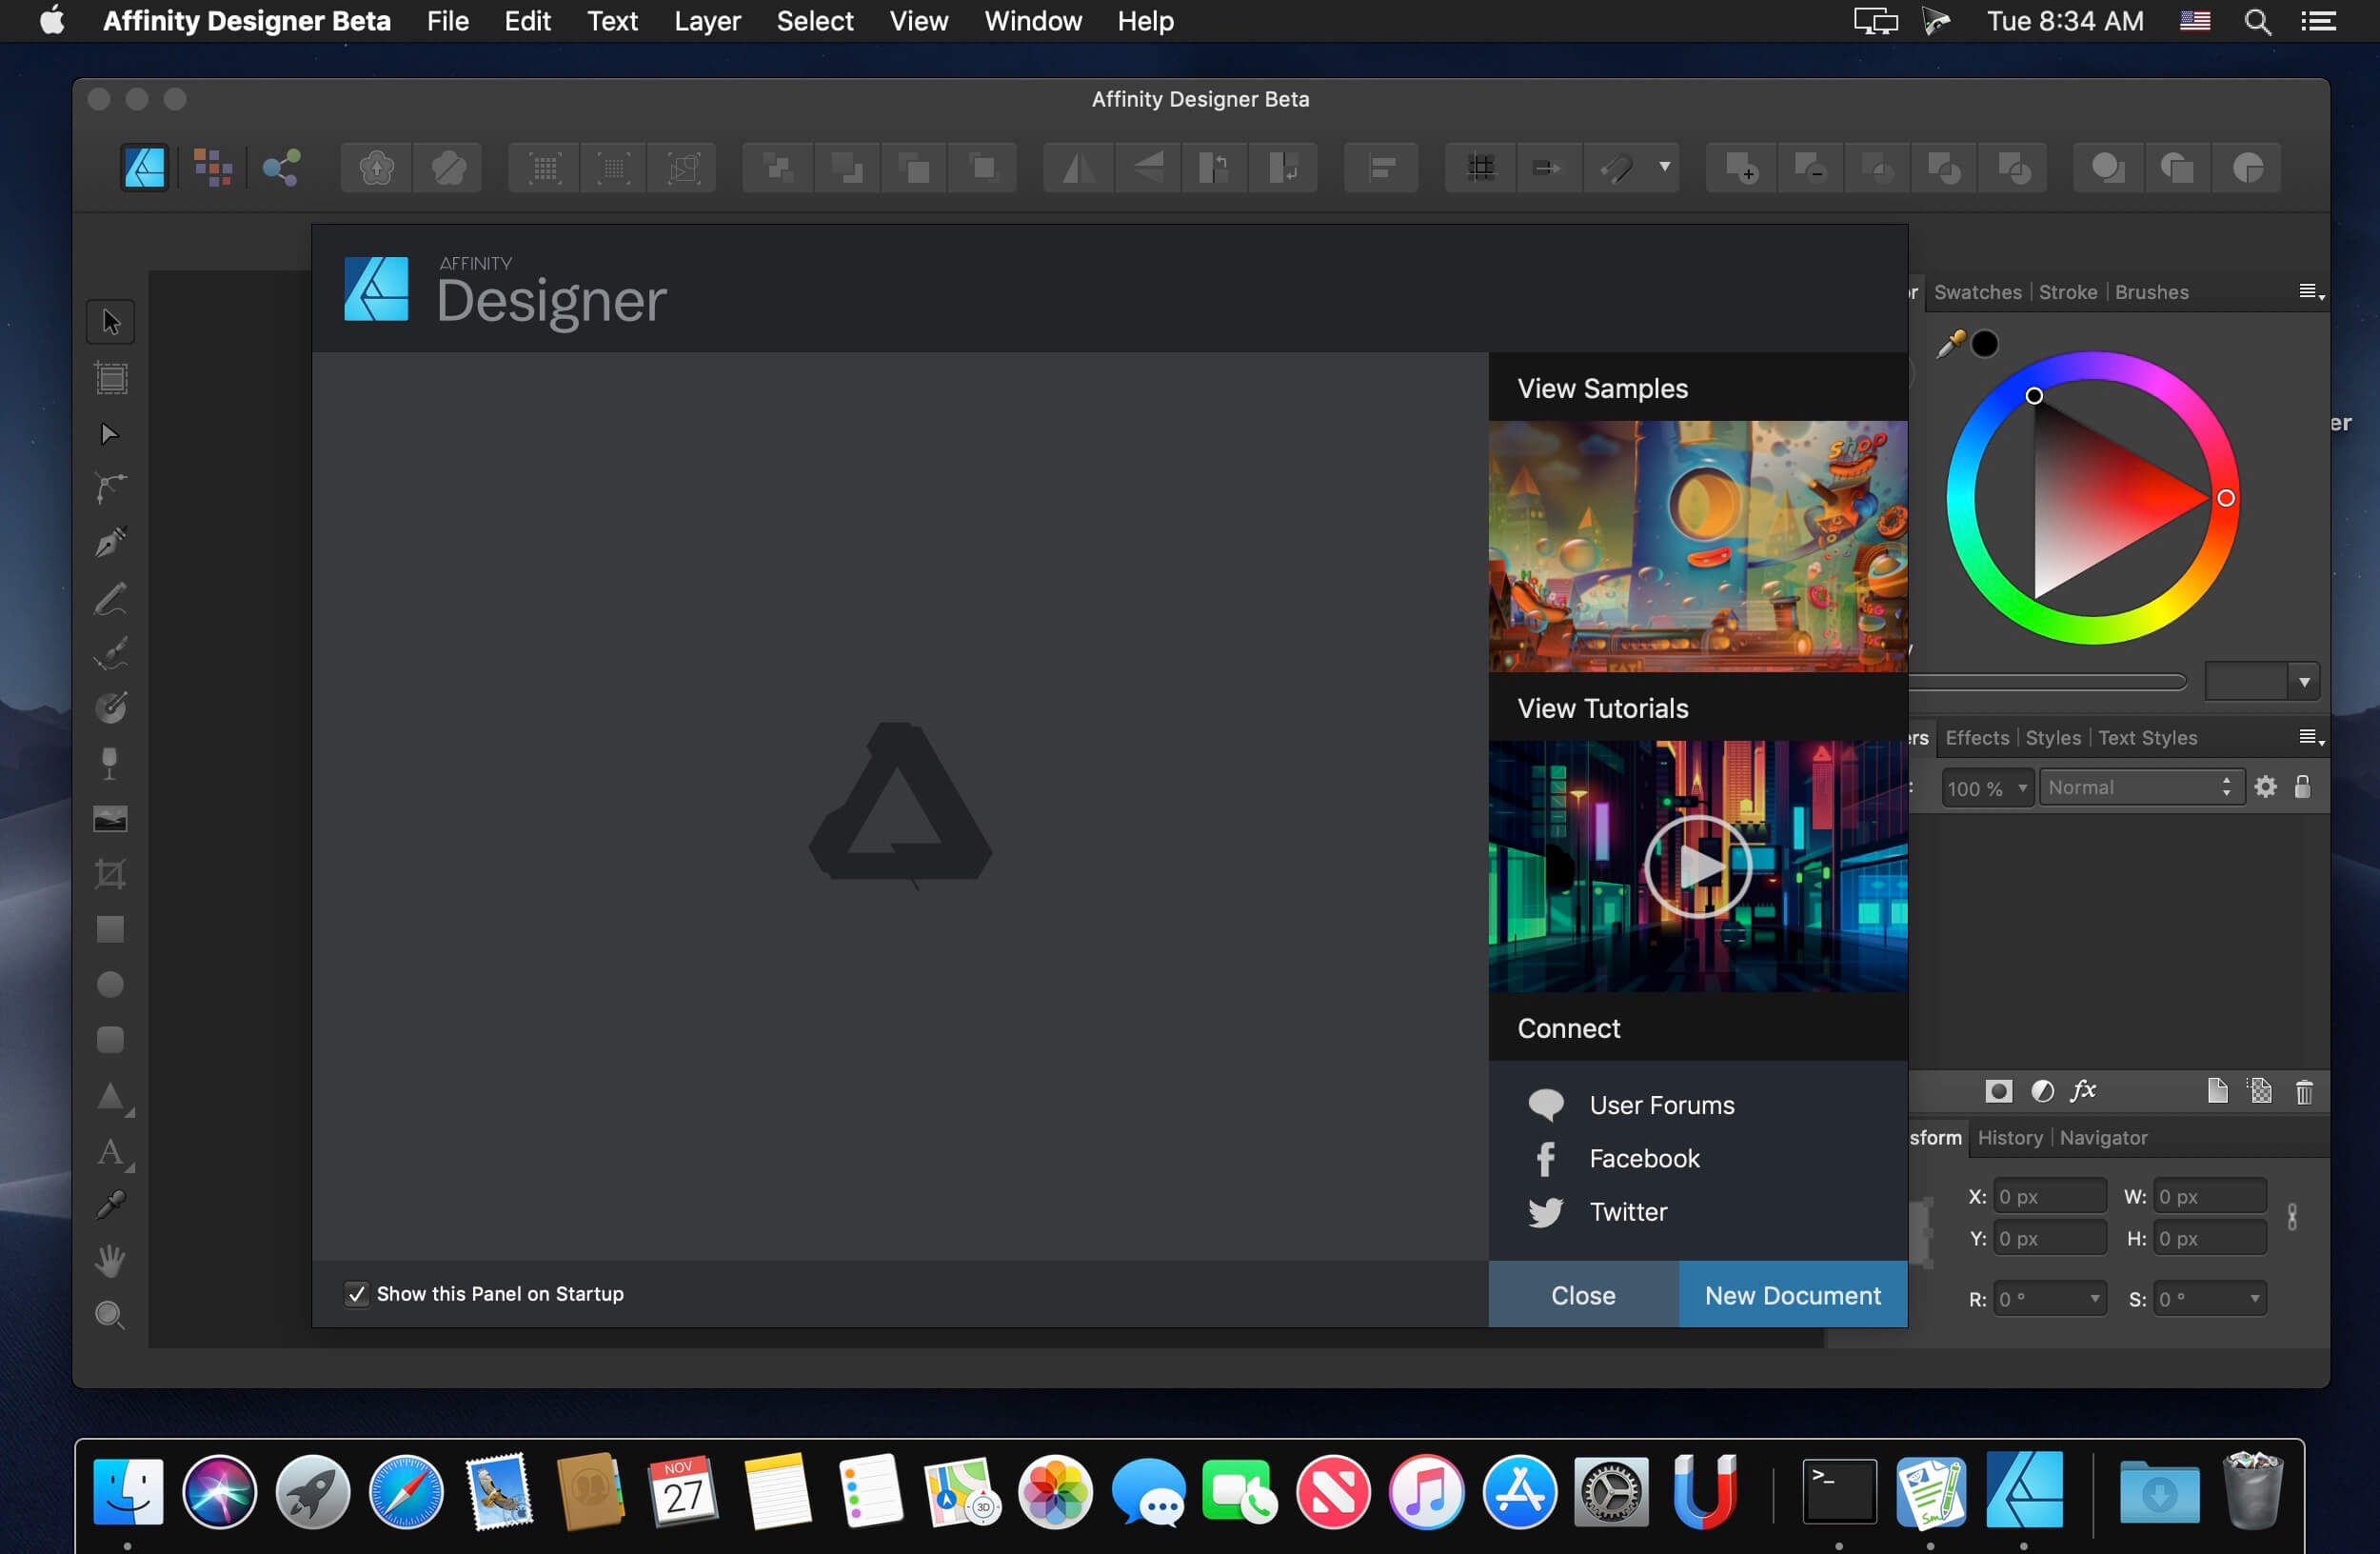 FotoJet Designer 1.2.6 instal the new version for apple